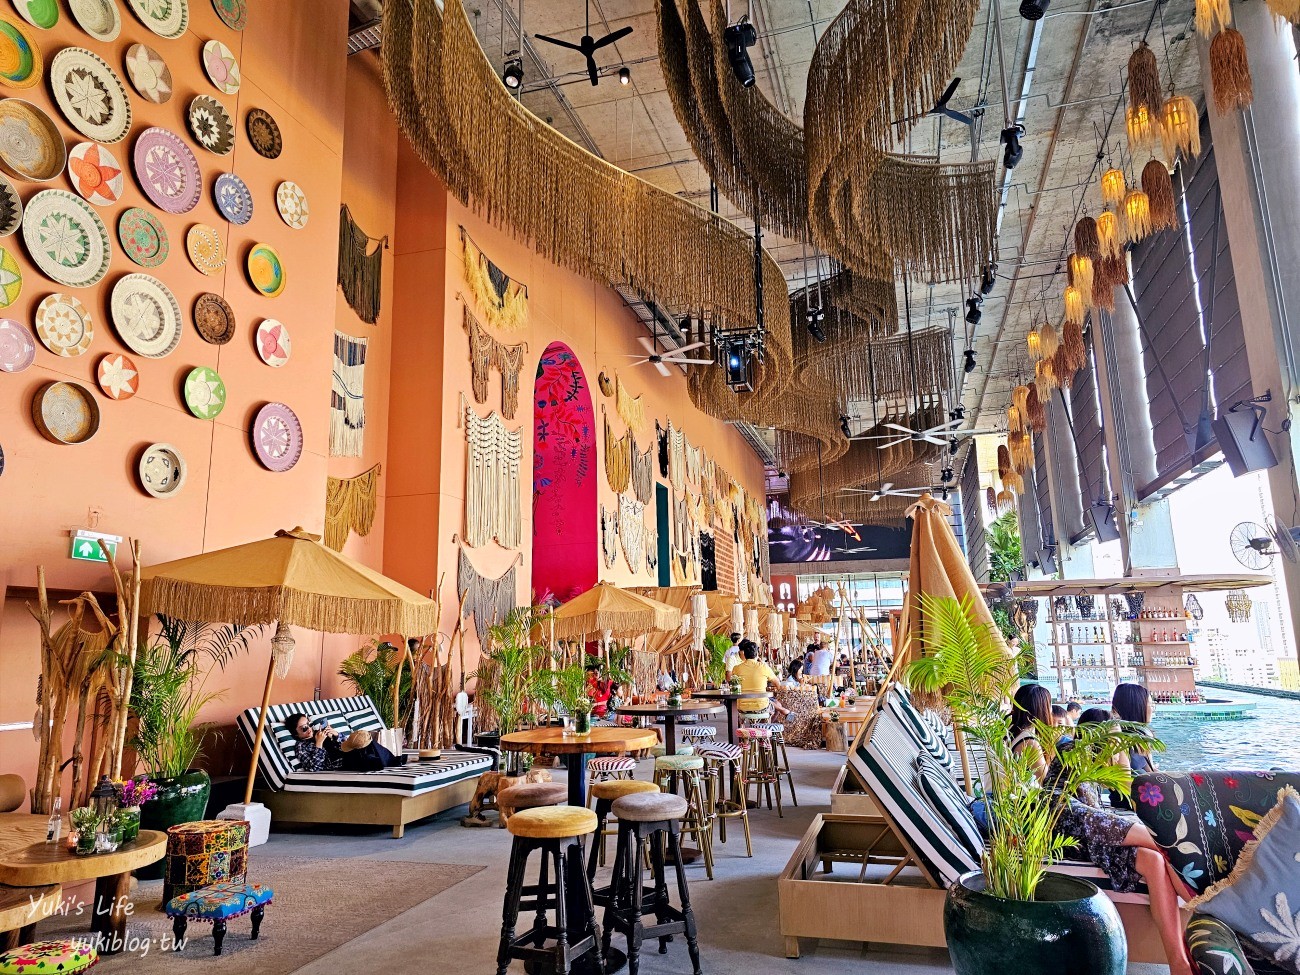 曼谷最新酒吧【TRIBE Sky Beach Club】藏在百貨裡的海島渡假，從早到晚享受池畔Chill氛圍 - yuki.tw